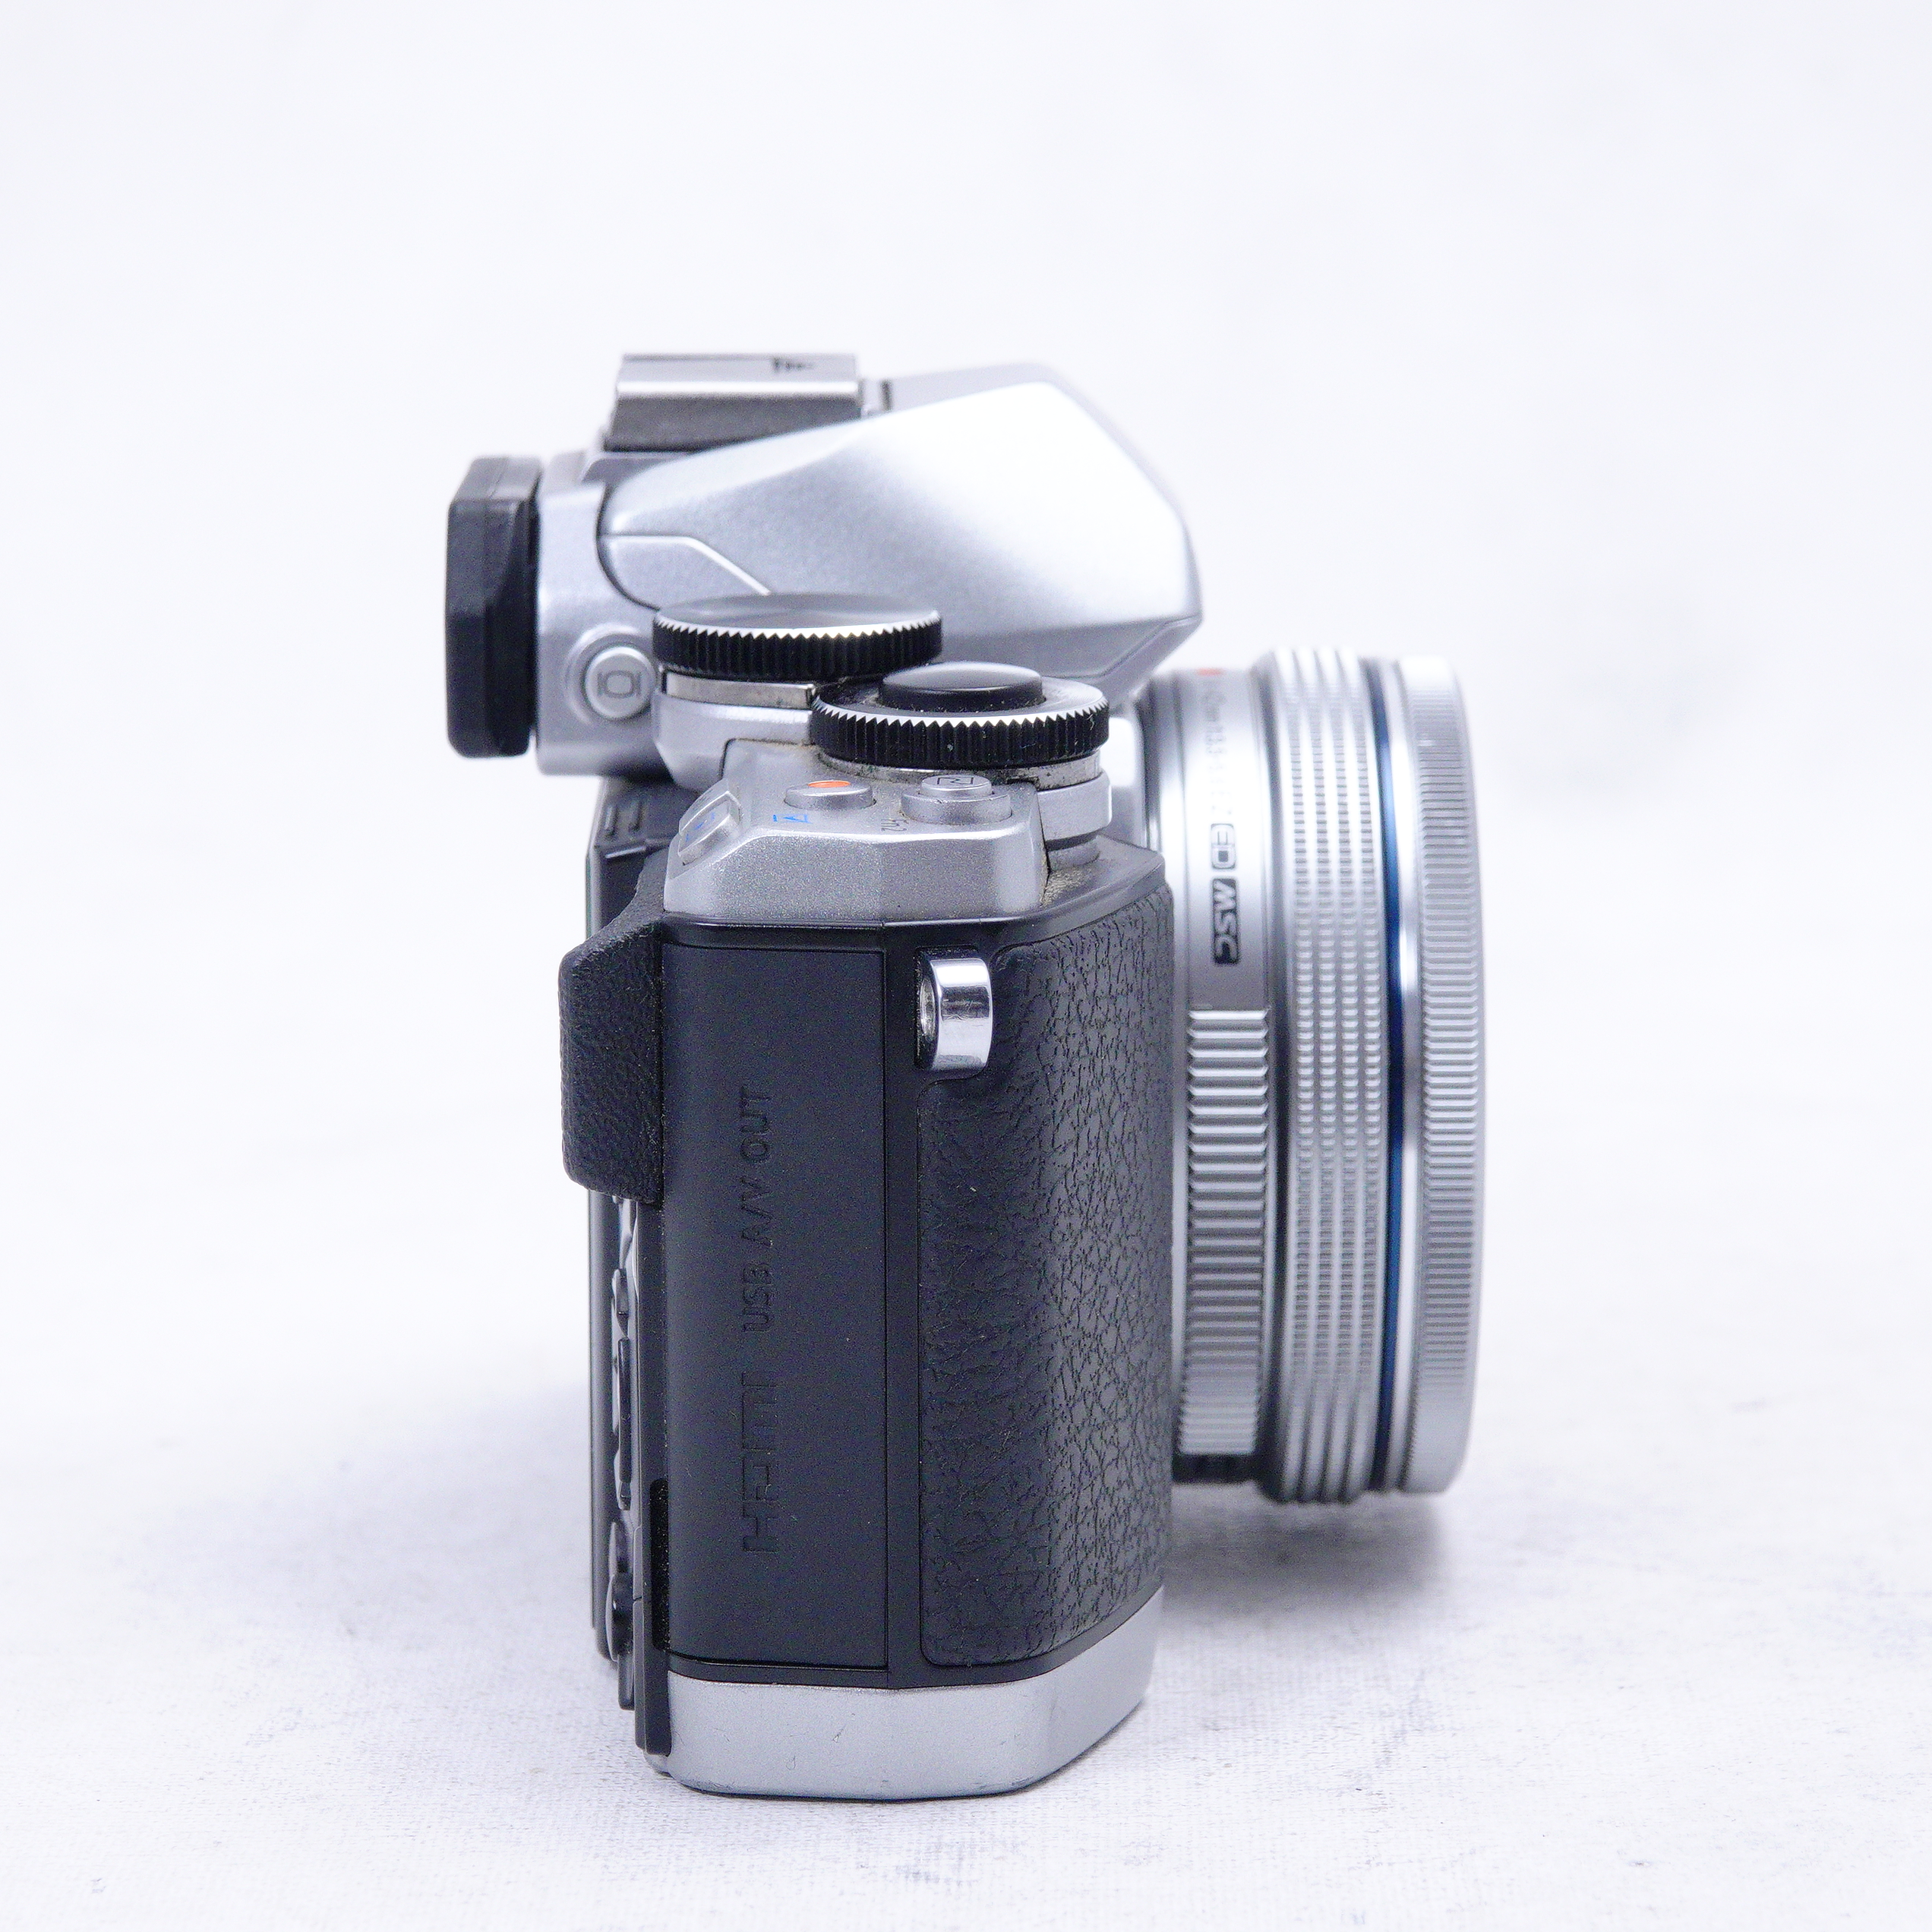 Olympus OM-D E-M10 con lente M.Zuiko 14-42mm EZ - Usado